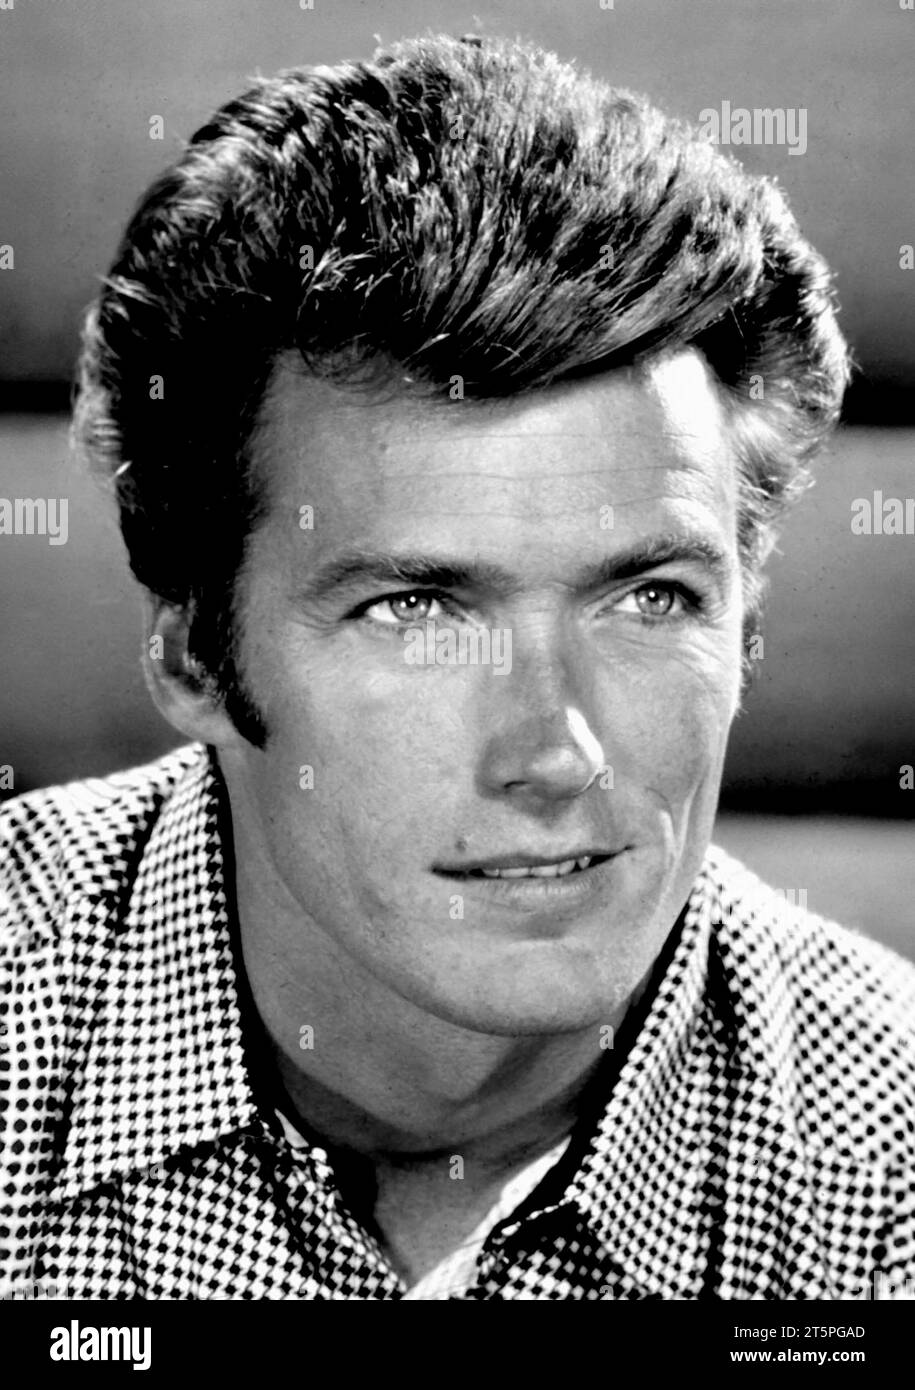 Clint Eastwood. Portait dell'attore e regista americano Clinton Eastwood Jr. (Nato nel 1930), Publicity Still, anni '1960 Foto Stock